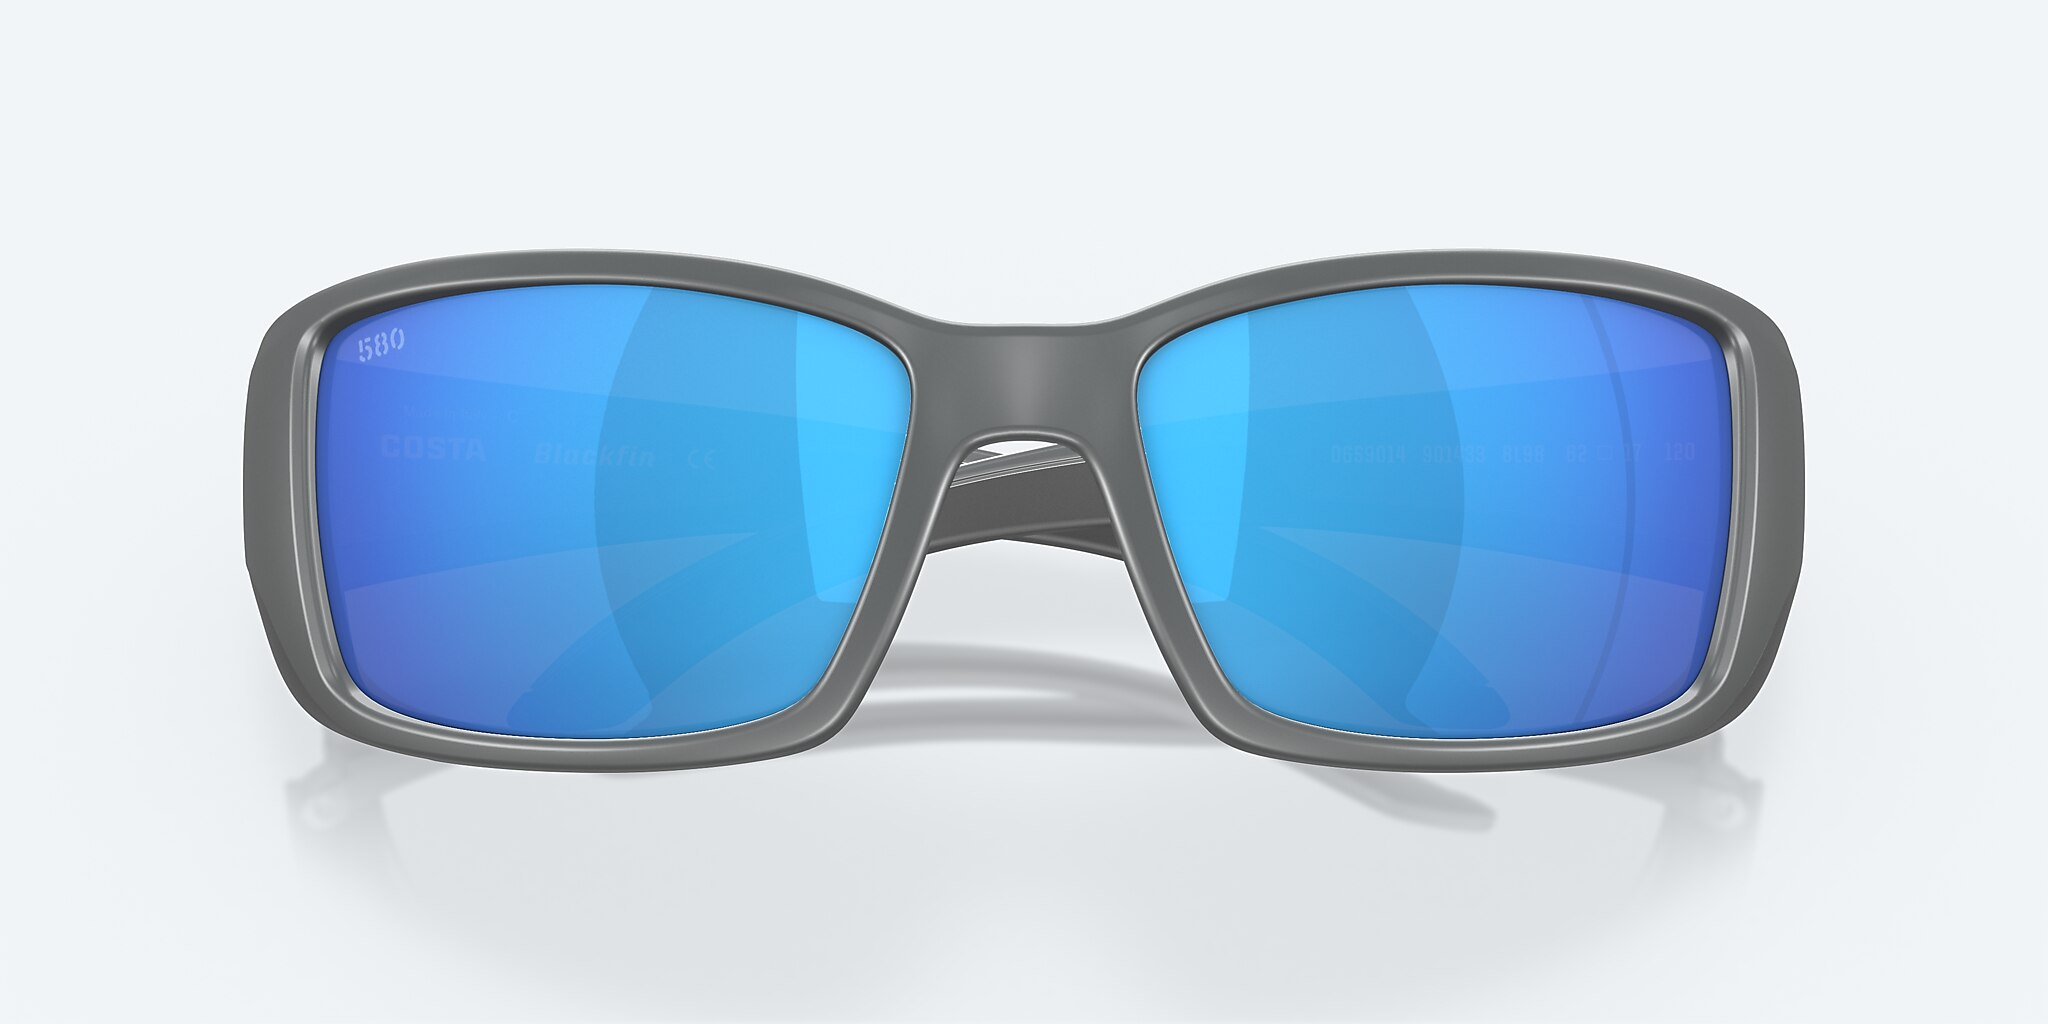 Blackfin Polarized Del | Mirror in Blue Sunglasses Costa Mar®